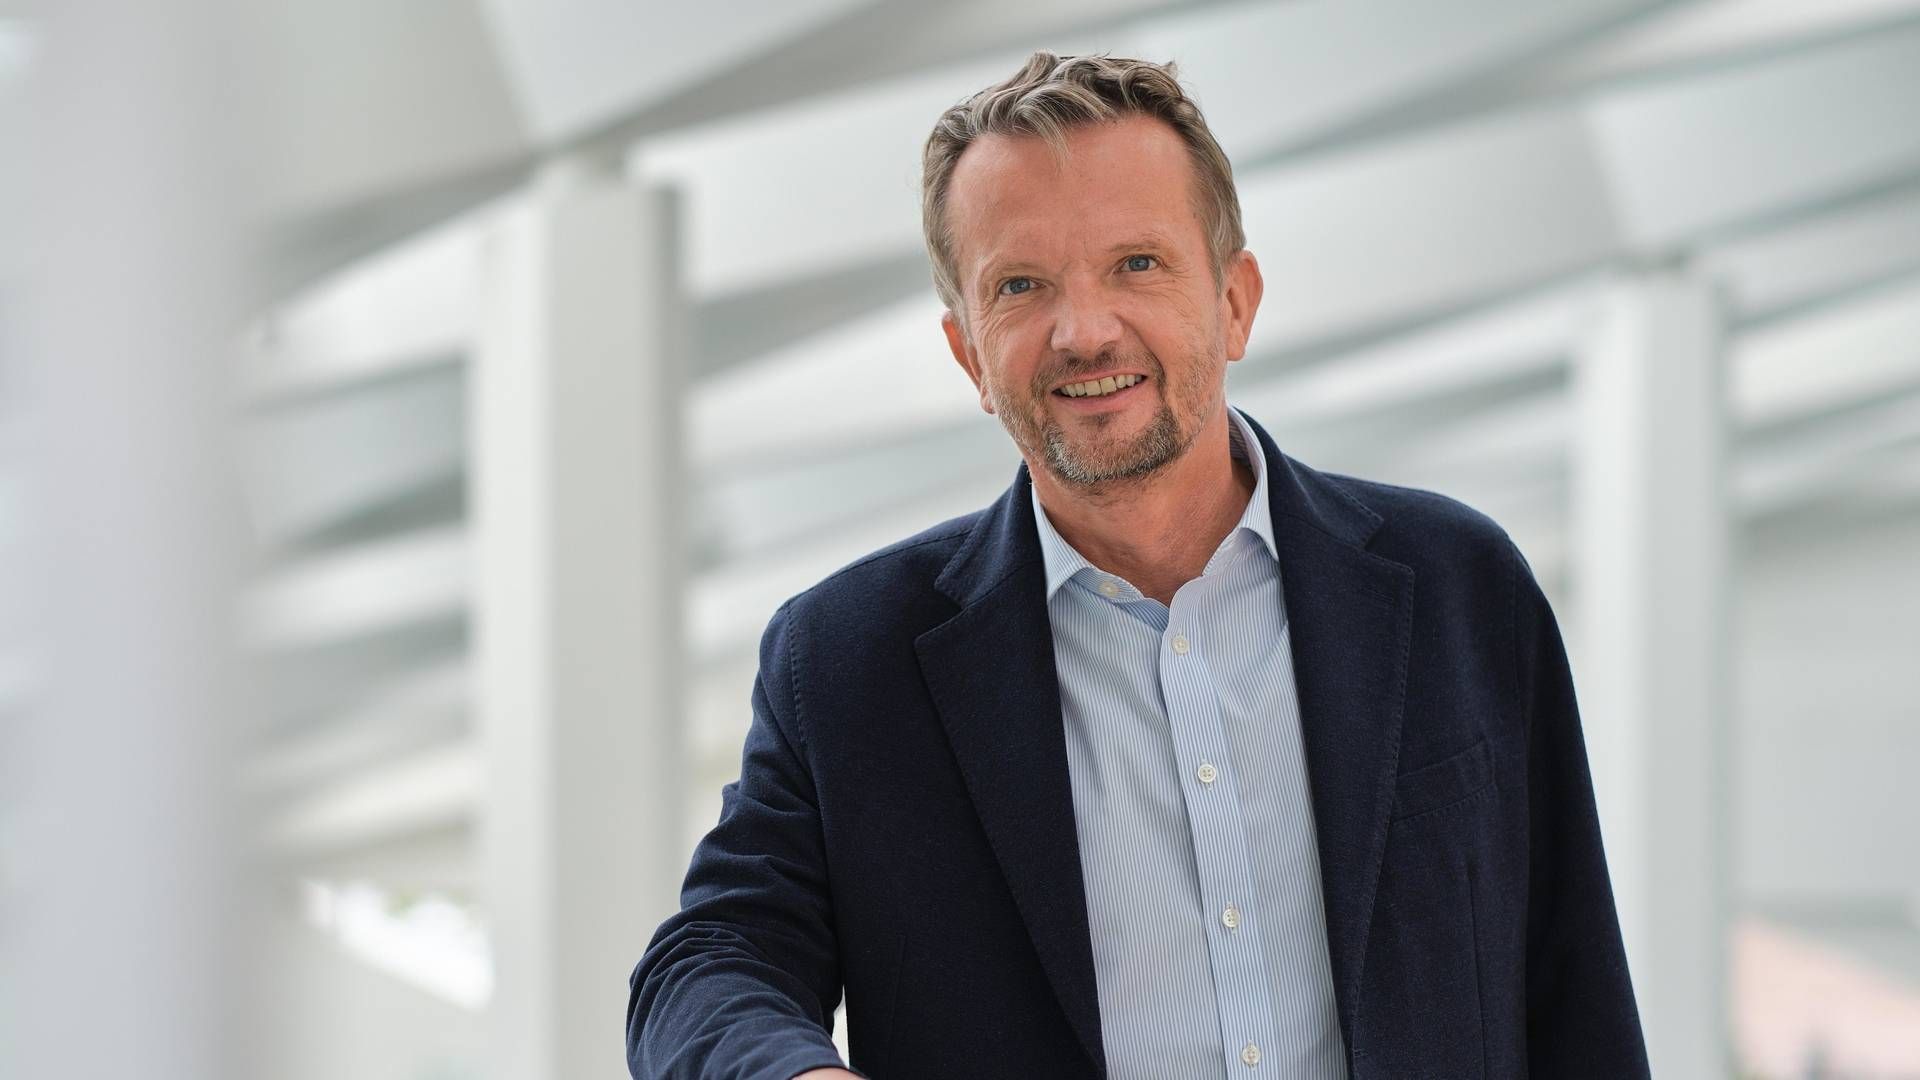 Adm. direktør i Middelfart Sparekasse, Martin Baltser, kan ikke give lovning på, at filialen på Fanø vil fortsætte på sigt. | Foto: Middelfart Sparekasse/PR